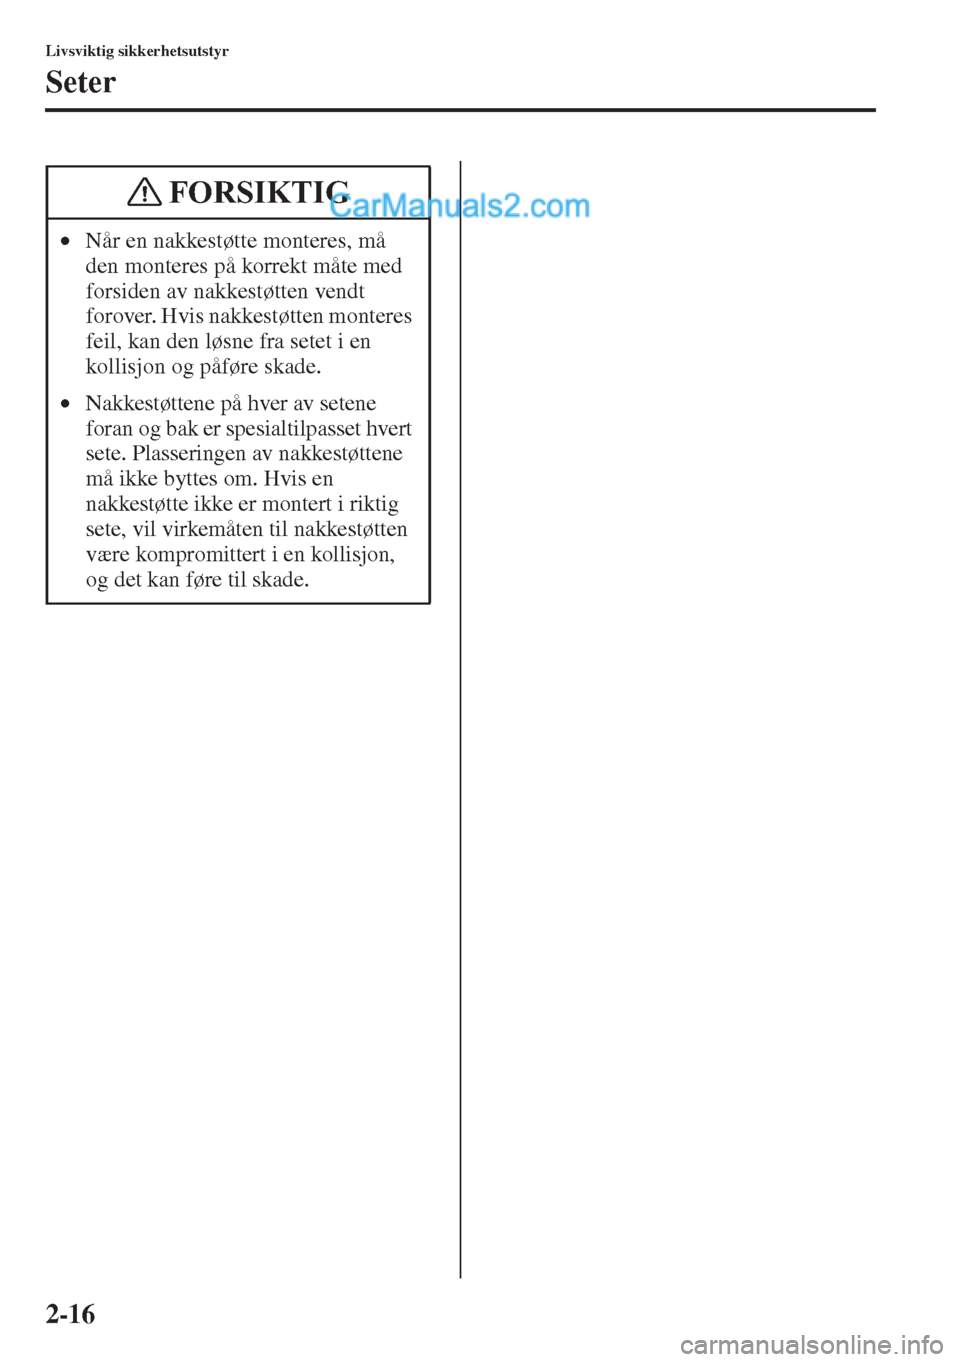 MAZDA MODEL CX-5 2015  Brukerhåndbok (in Norwegian) 2-16
Livsviktig sikkerhetsutstyr
Seter
•Når en nakkestøtte monteres, må 
den monteres på korrekt måte med 
forsiden av nakkestøtten vendt 
forover. Hvis nakkestøtten monteres 
feil, kan den l